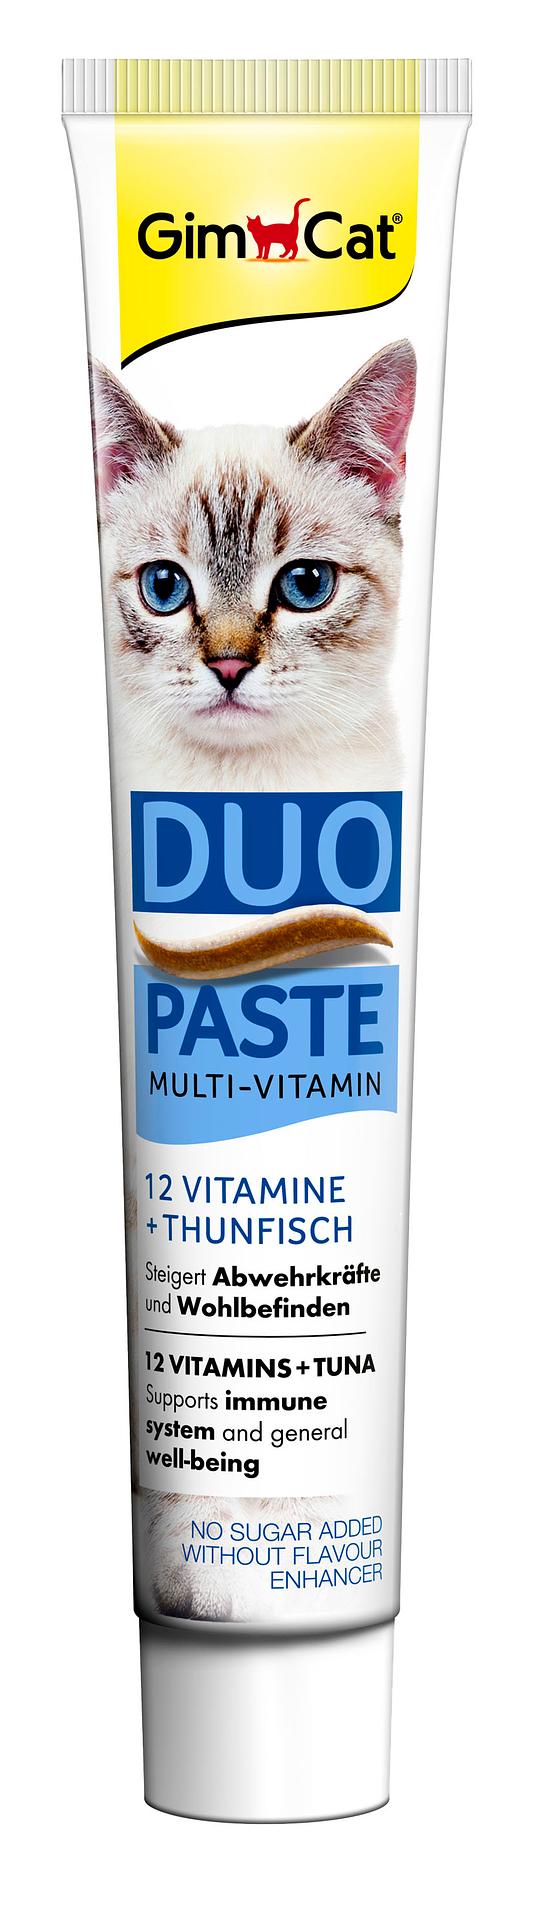 Duo Paste Thunfisch + 12 Vitamine 50g